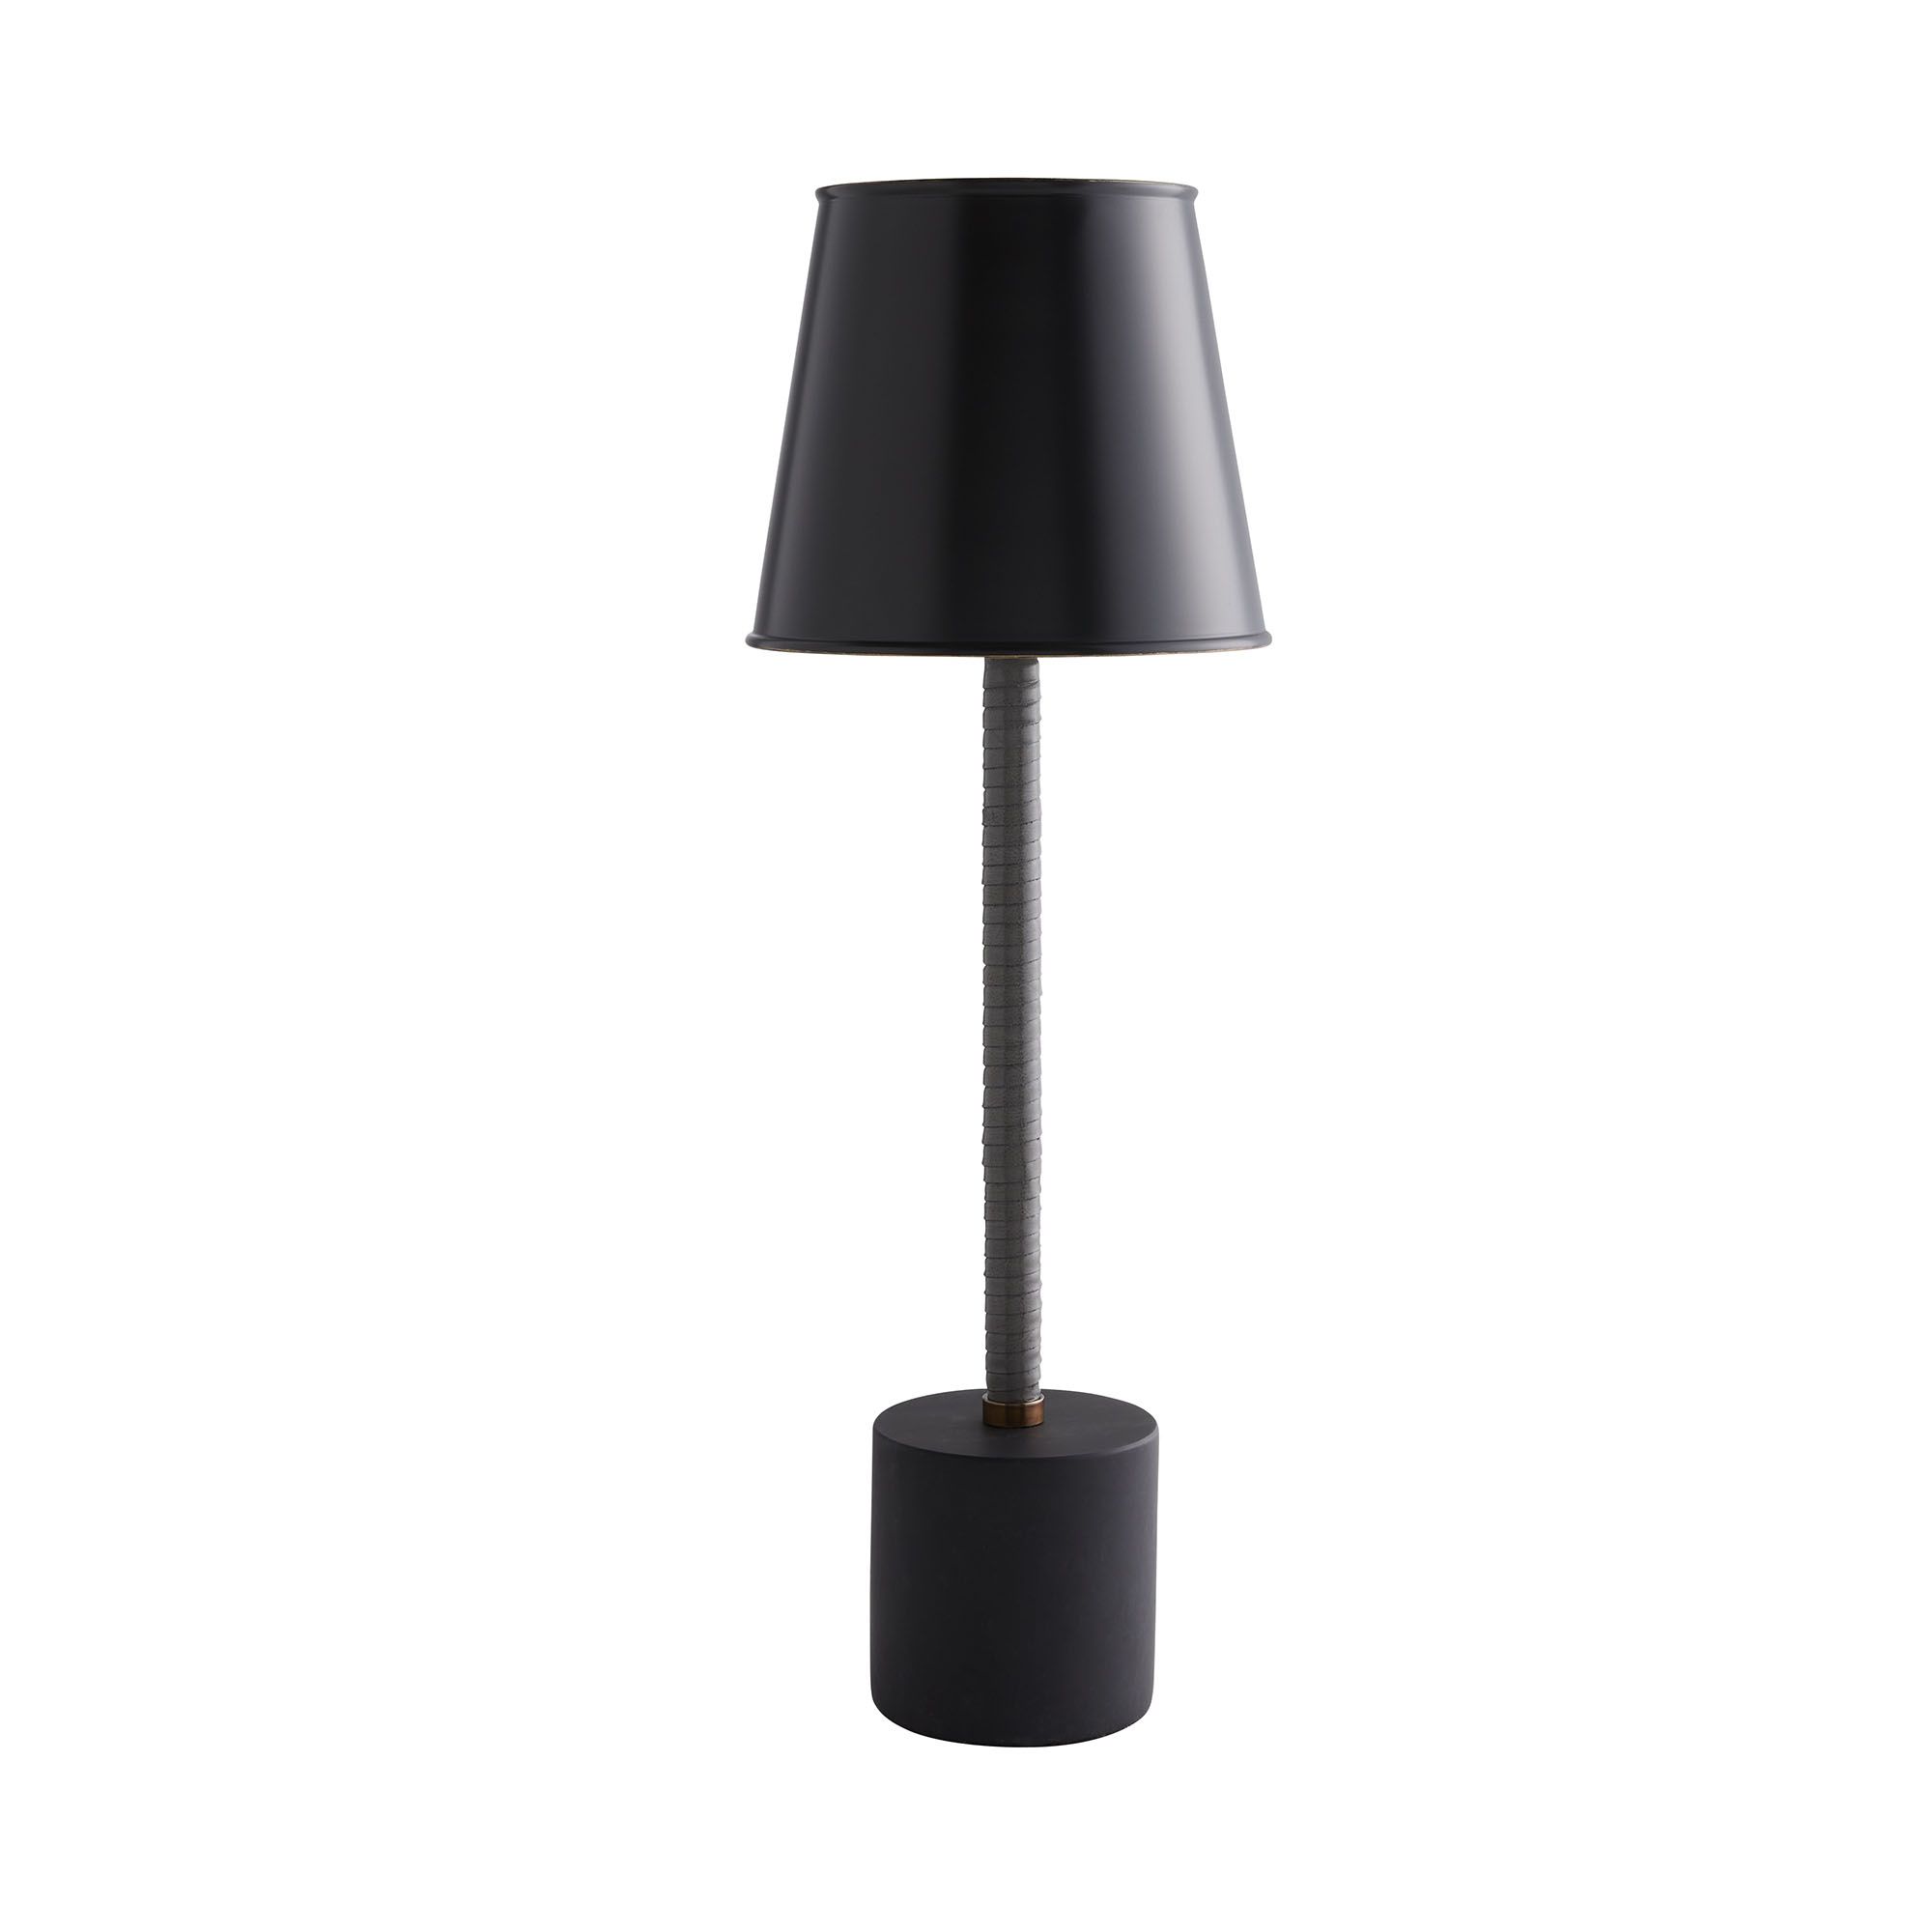 Купить Настольная лампа Libby Lamp в интернет-магазине roooms.ru